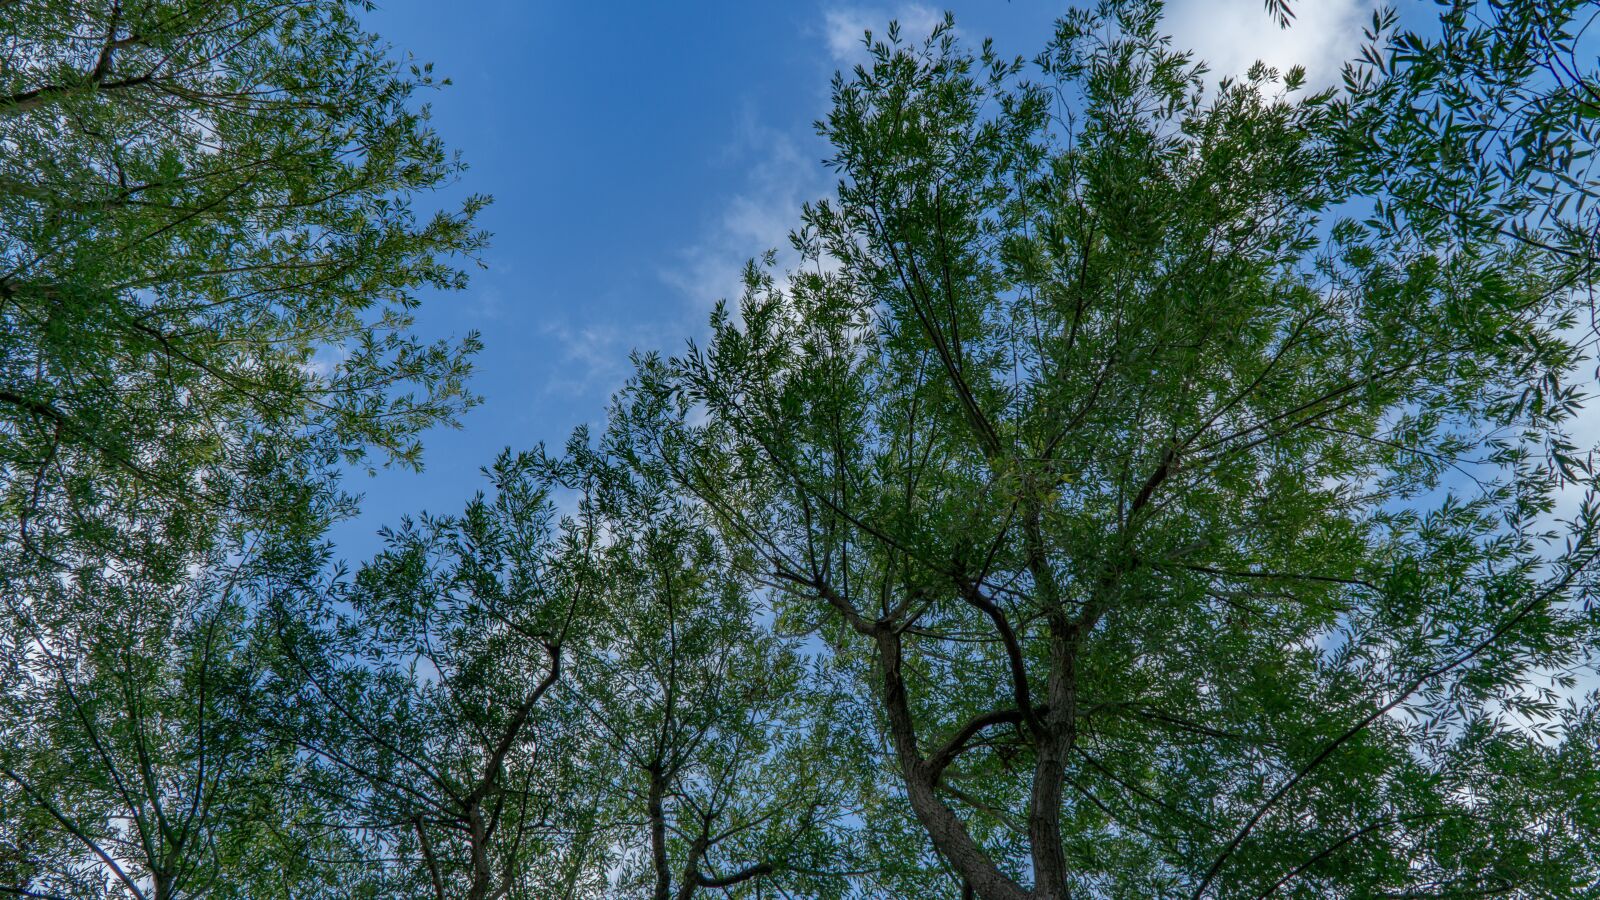 Sony a6000 sample photo. Tree, sky, nature photography